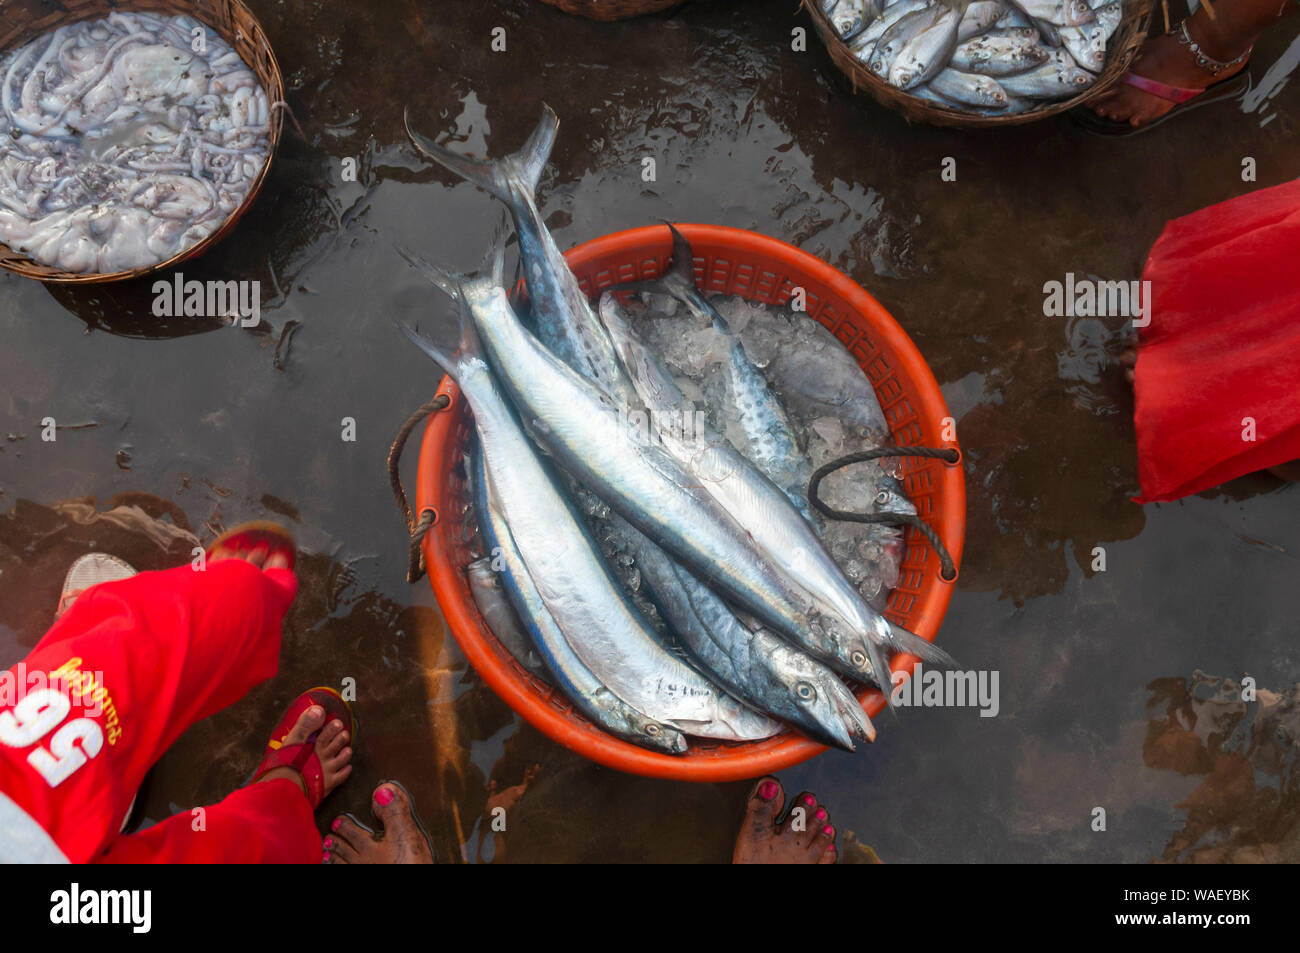 Fresh fish catch, Harney Jetty, Ratnagiri, Maharashtra, India. Stock Photo